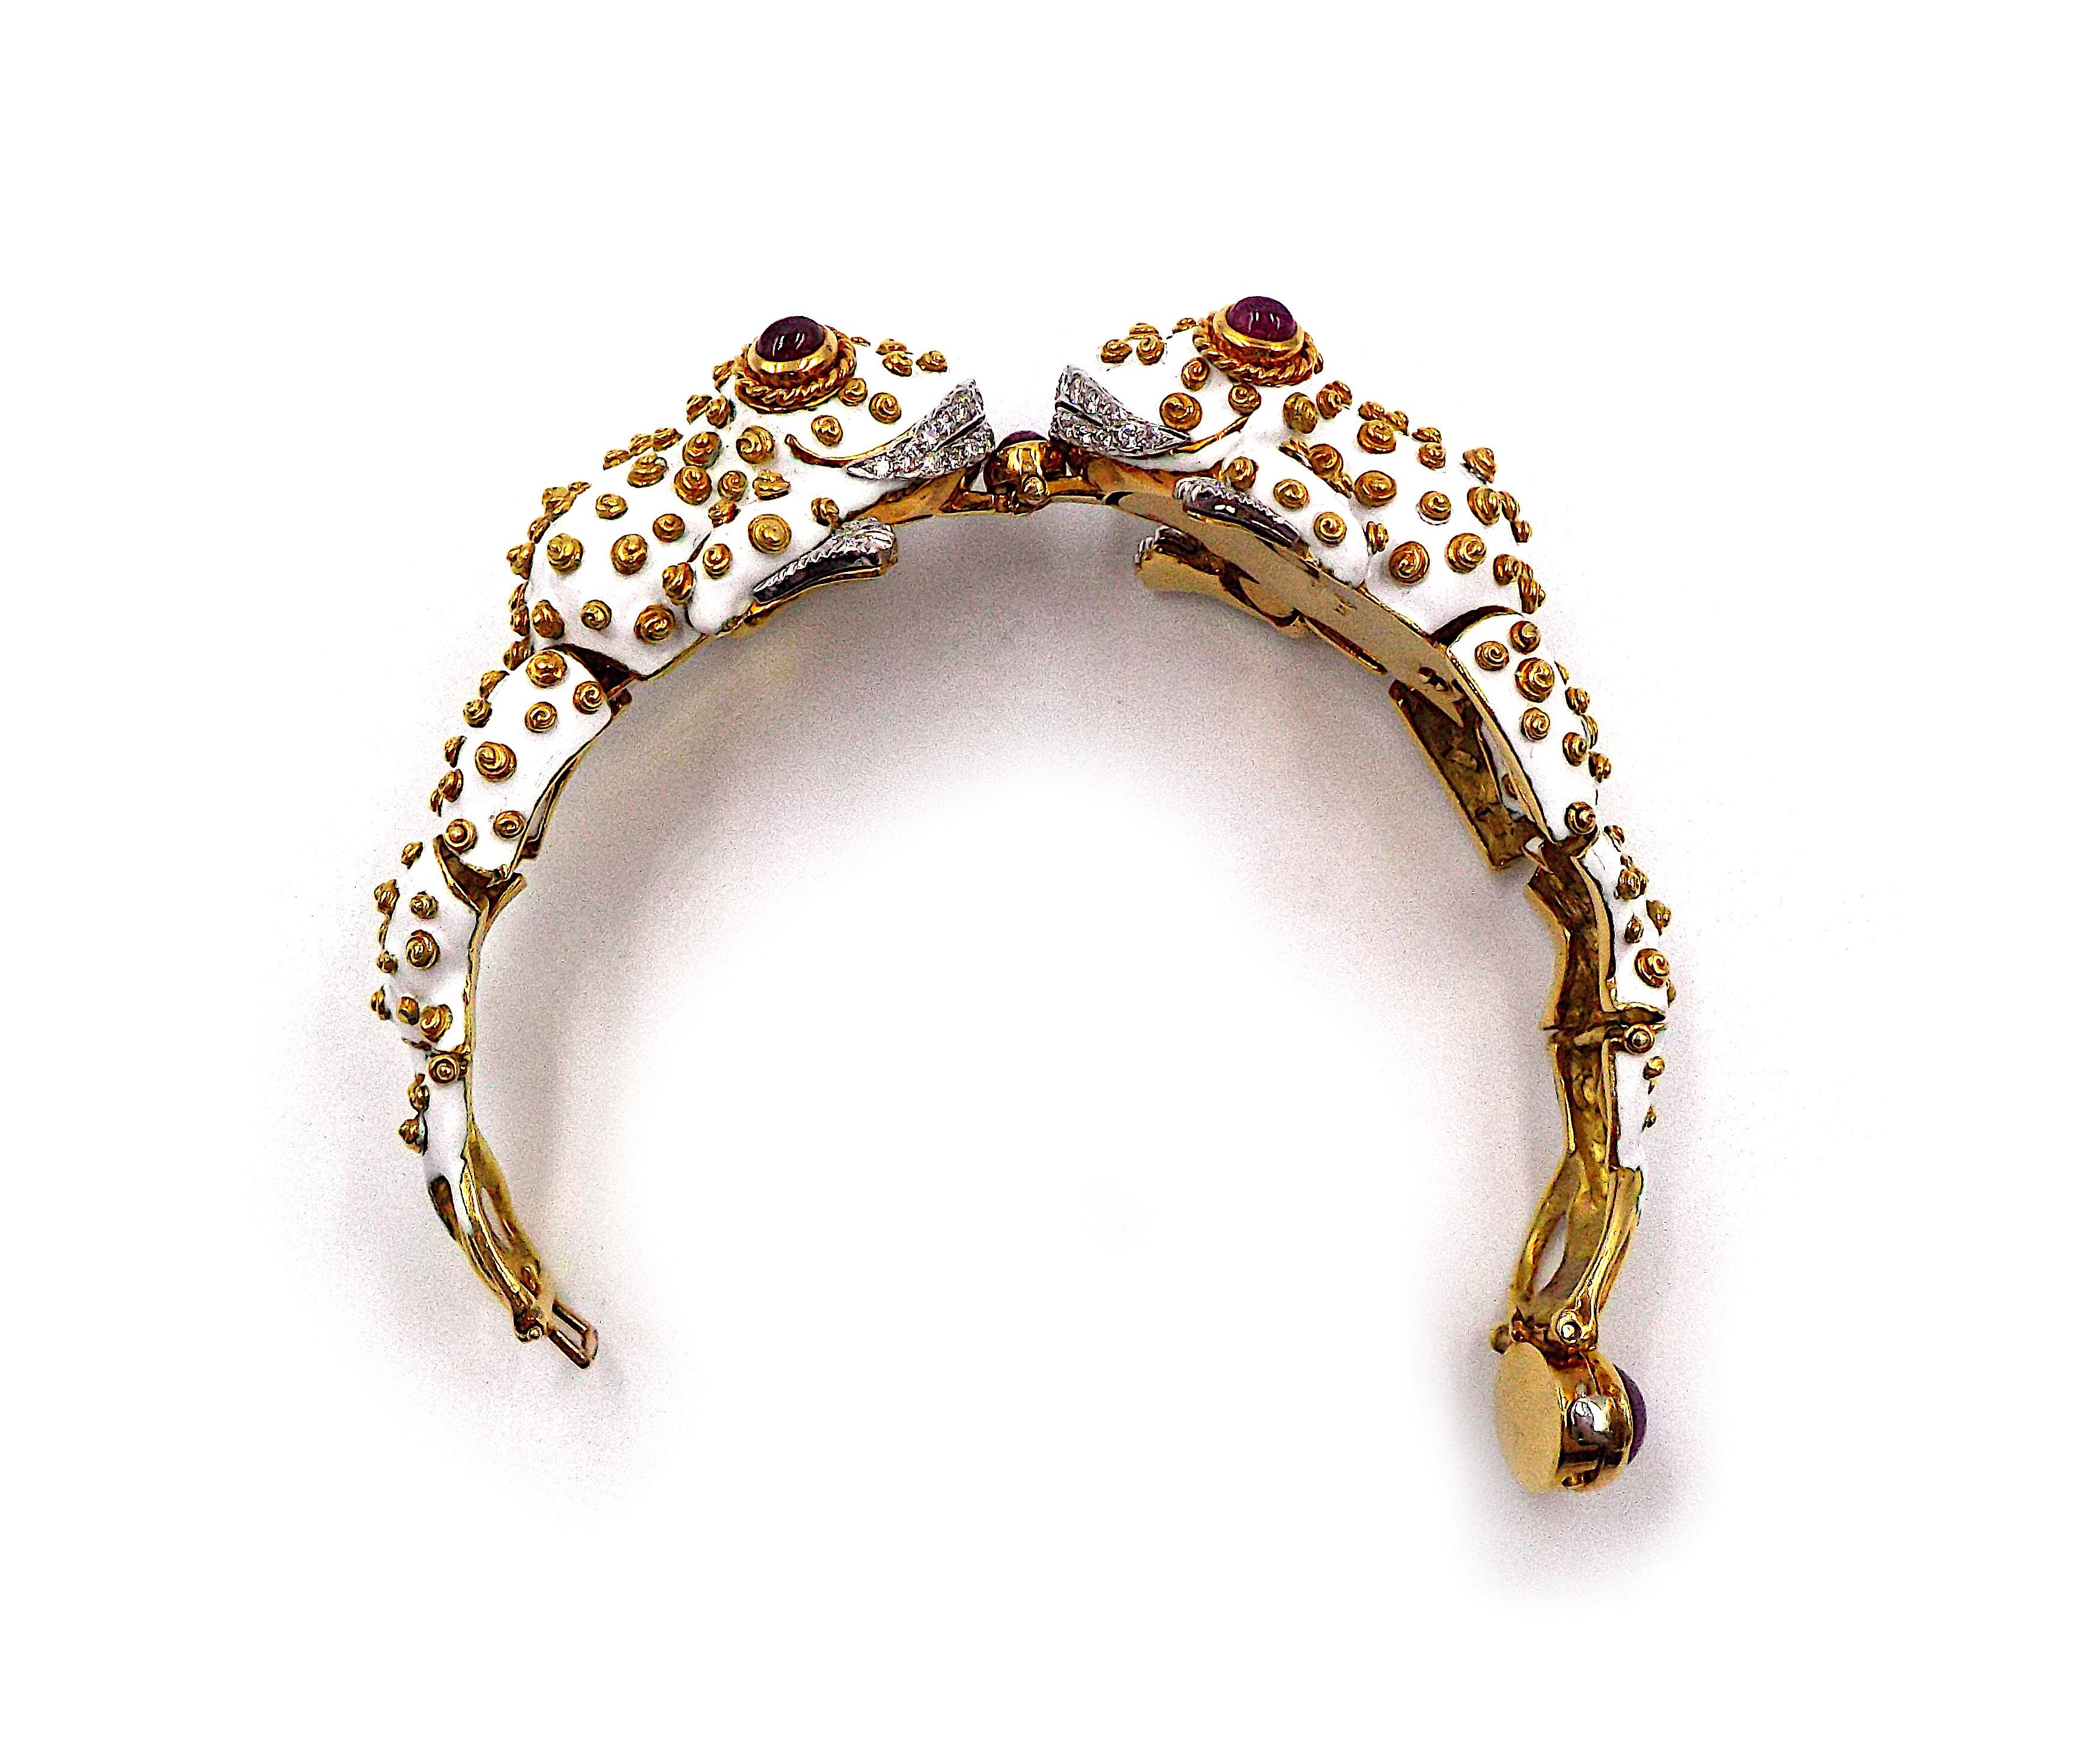 Un bracelet fantaisie en forme de grenouille jumelle par David Webb. Rubis cabochon, diamants taille brillant, émail blanc, or 18 carats et platine. Le poids brut est d'environ 113.7g, la circonférence intérieure est d'environ 6.75 pouces. Signé